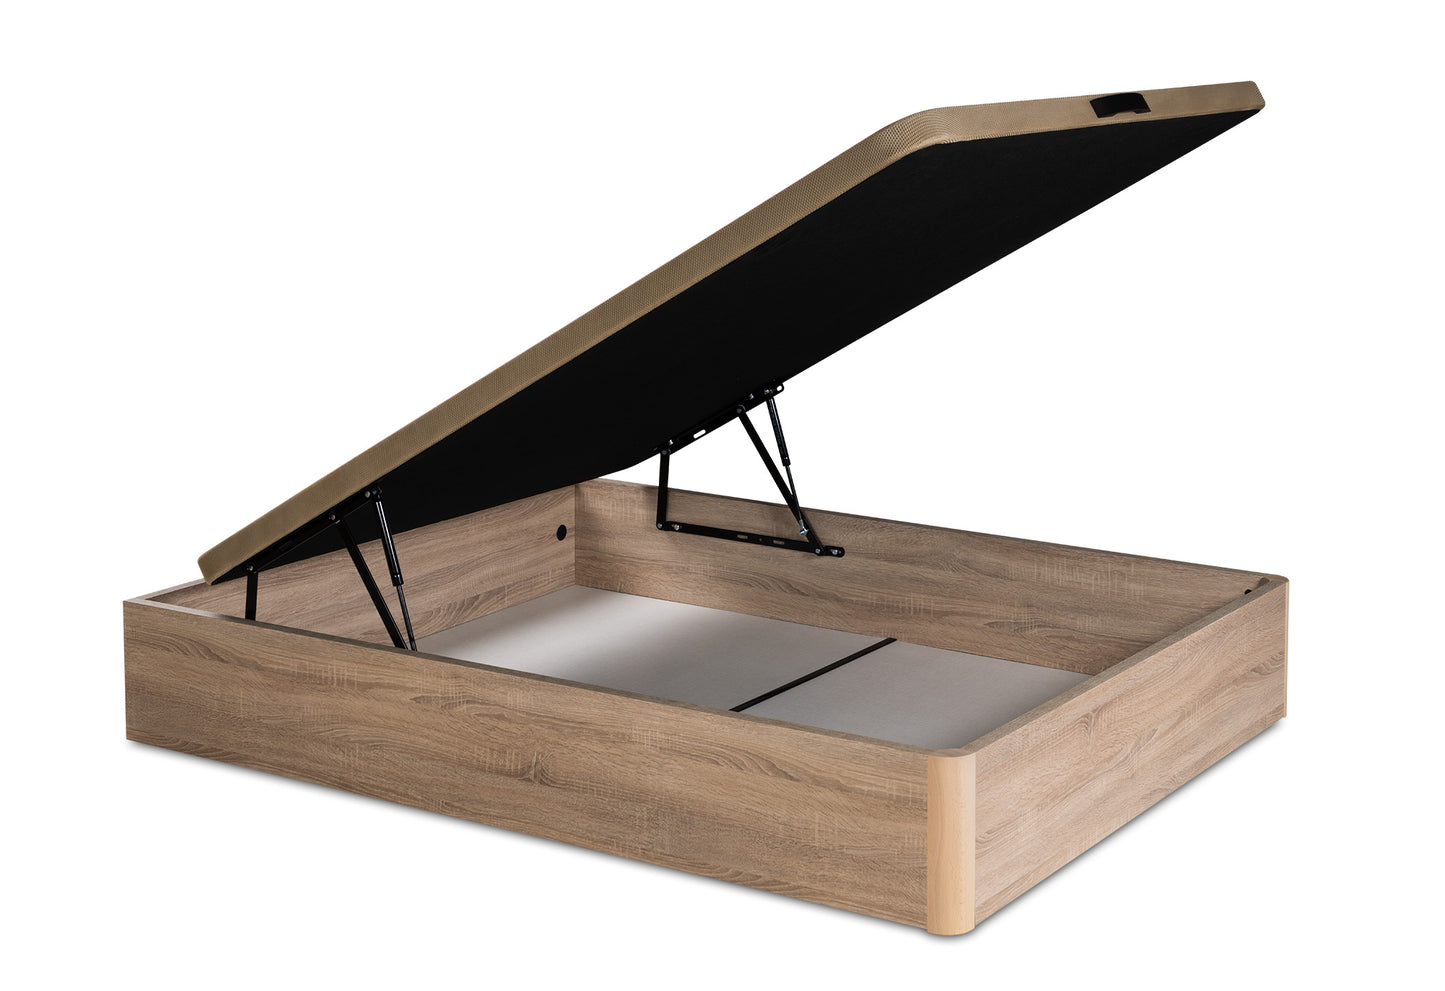 494,89 € - Canapé abatible de madera Cambrian 160x200 cm